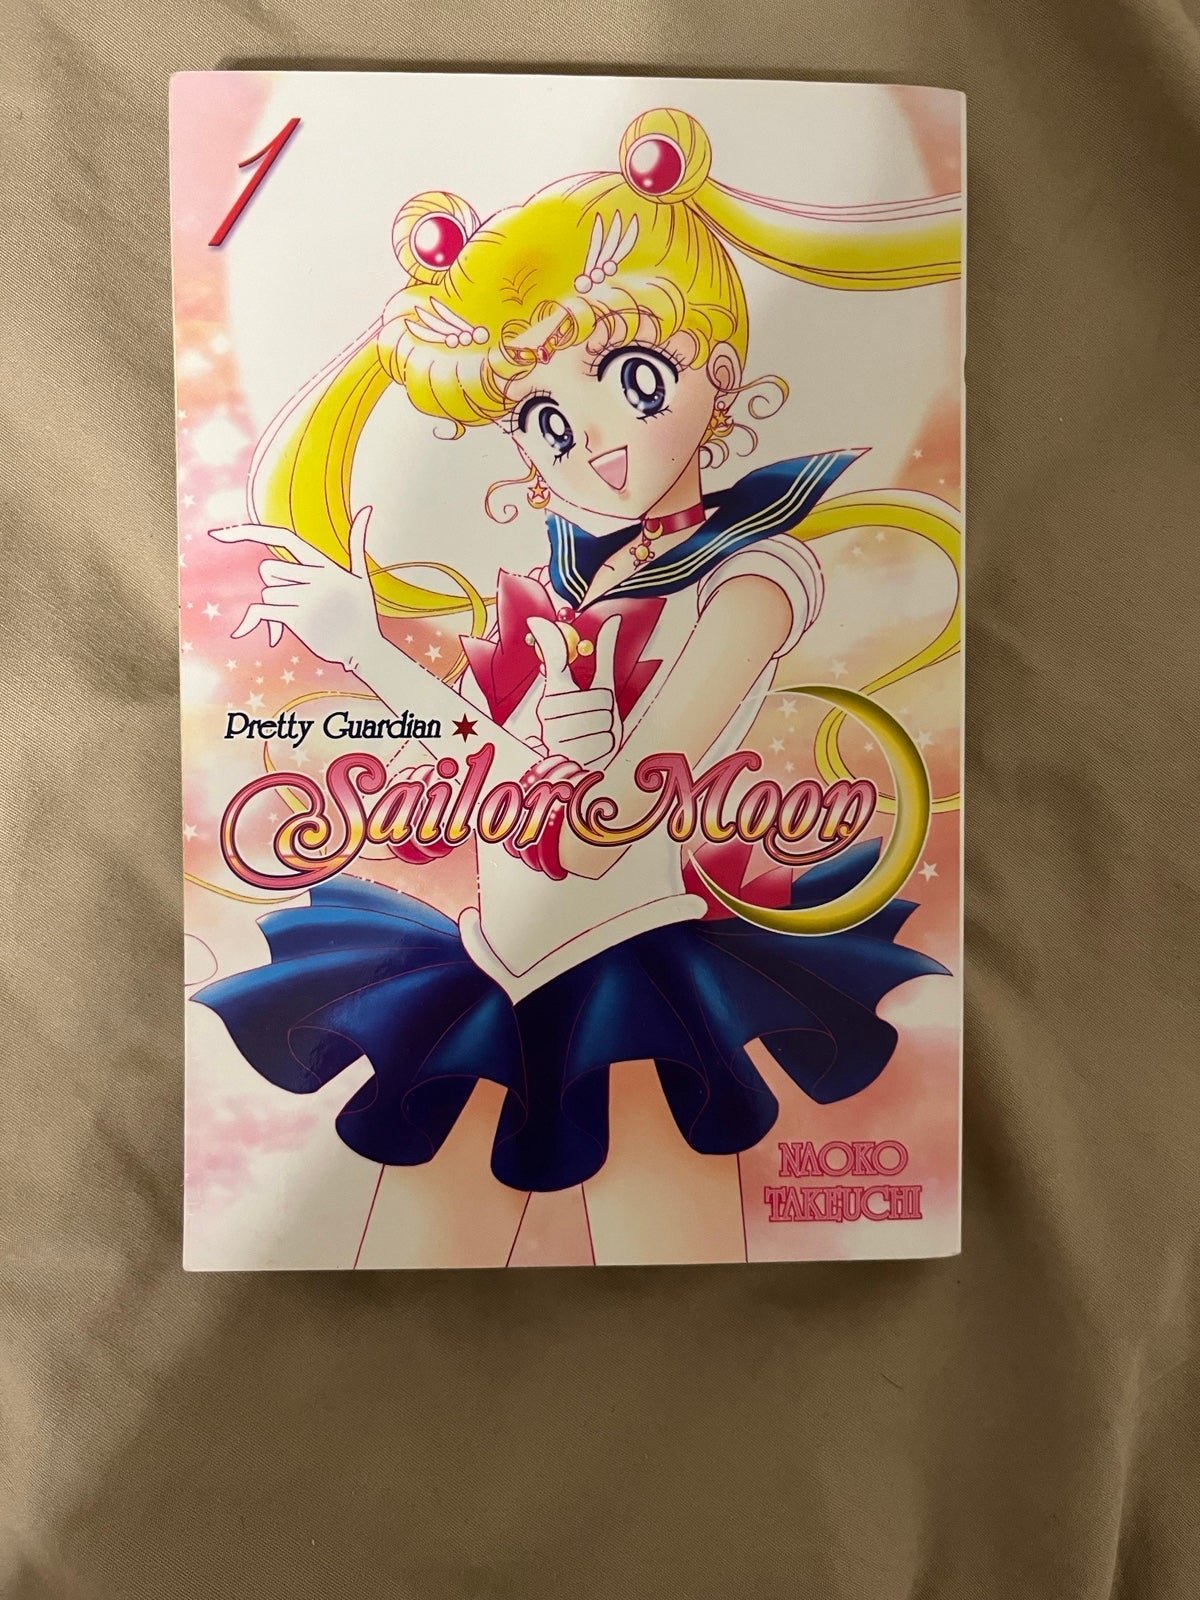 Sailor Moon volumes eOvqxGwQr